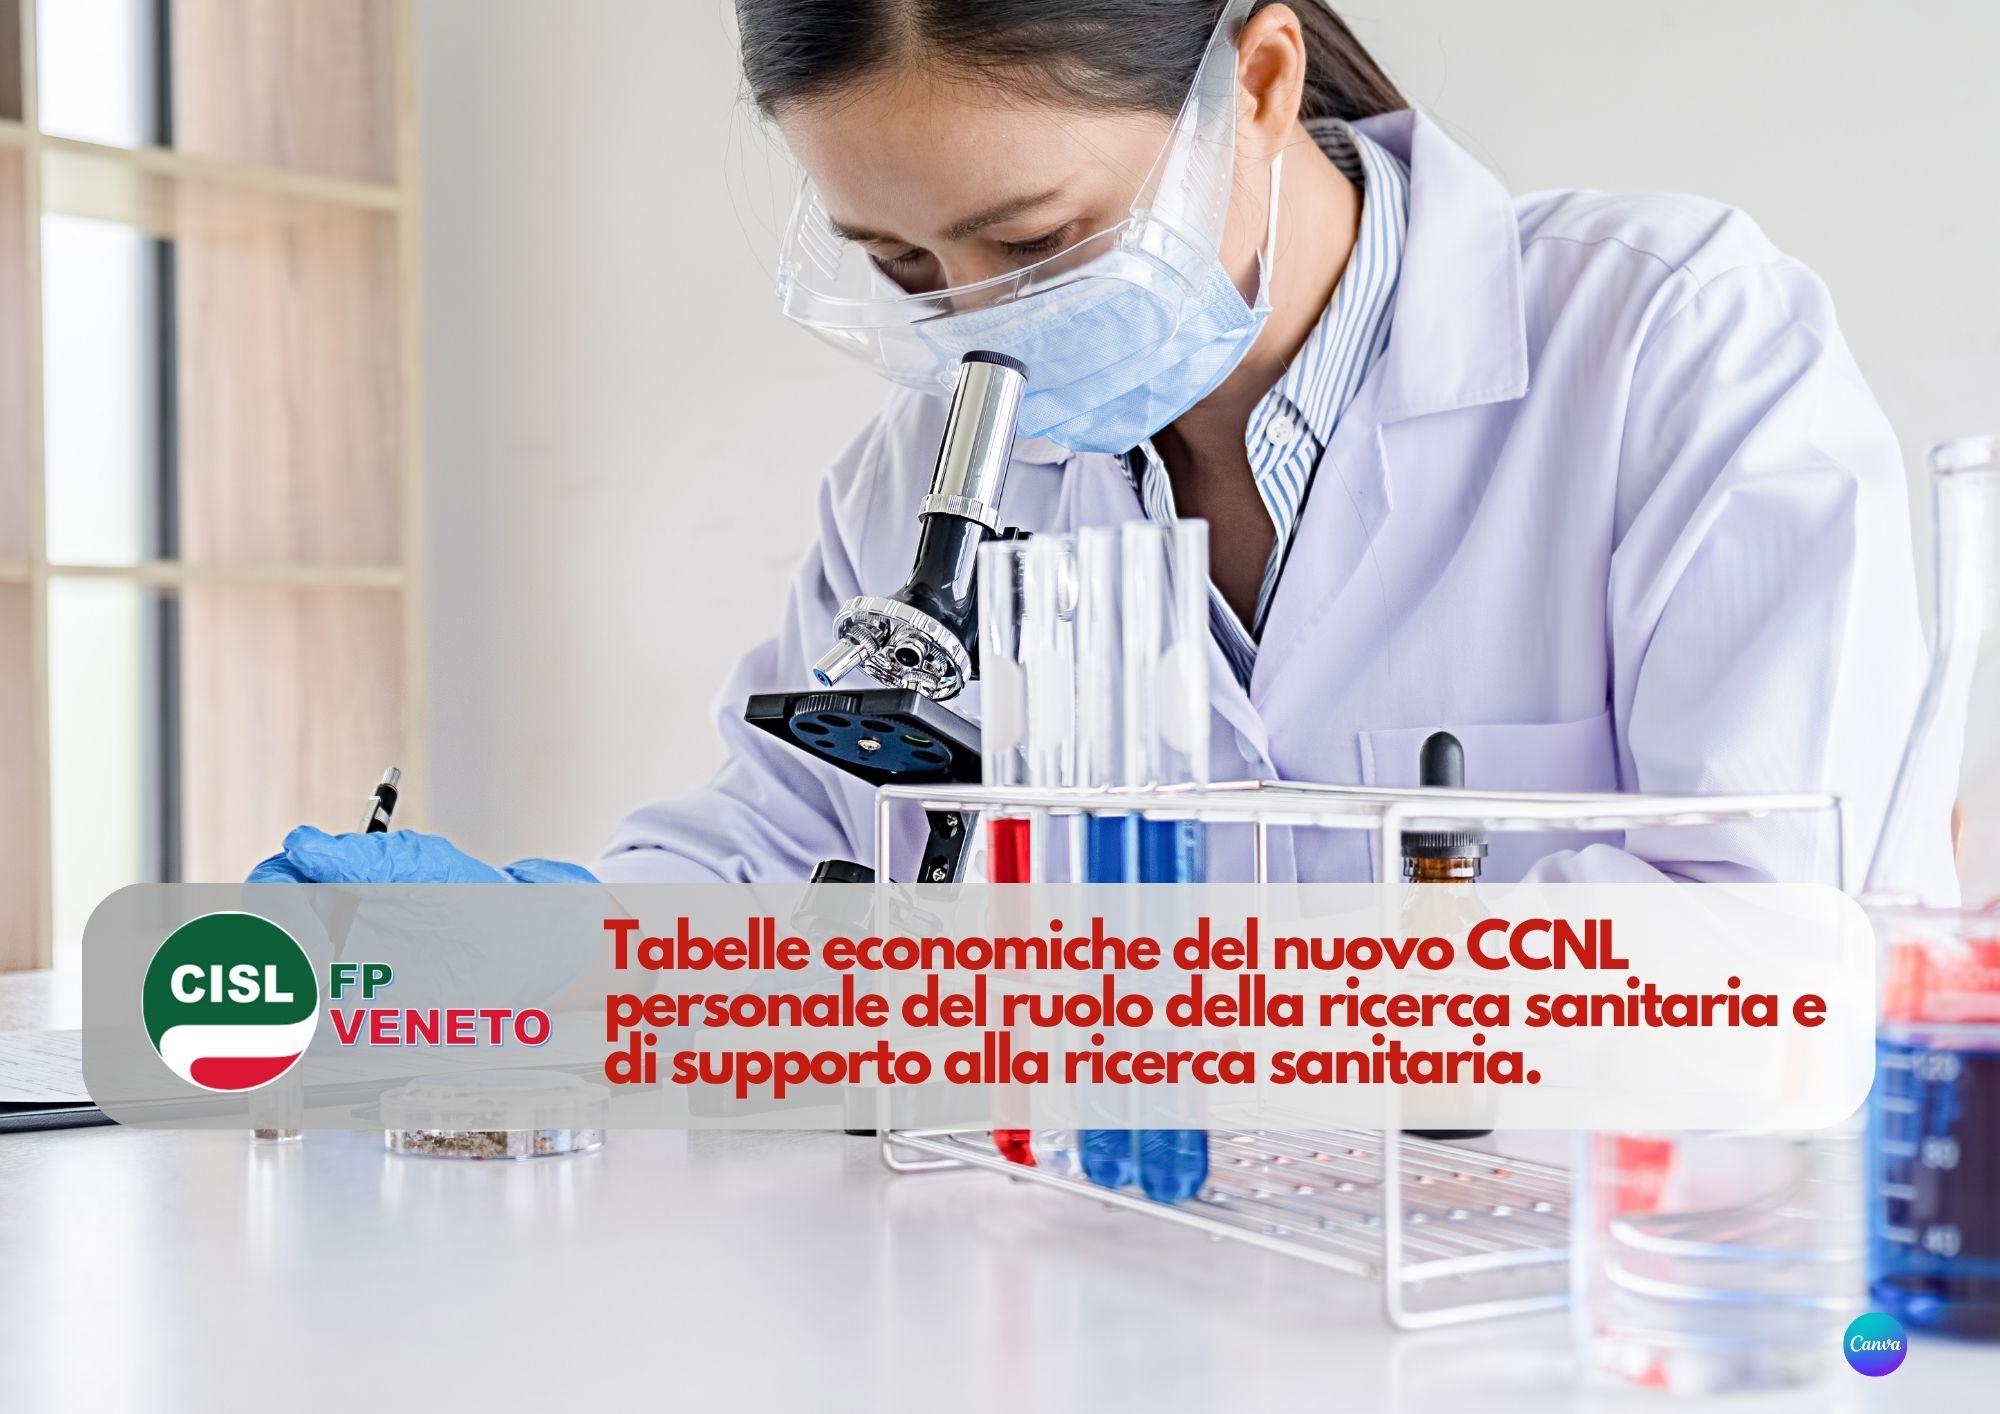 CISL FP Veneto. Nuovo CCNL personale ruolo ricerca sanitaria e supporto. Tabelle economiche